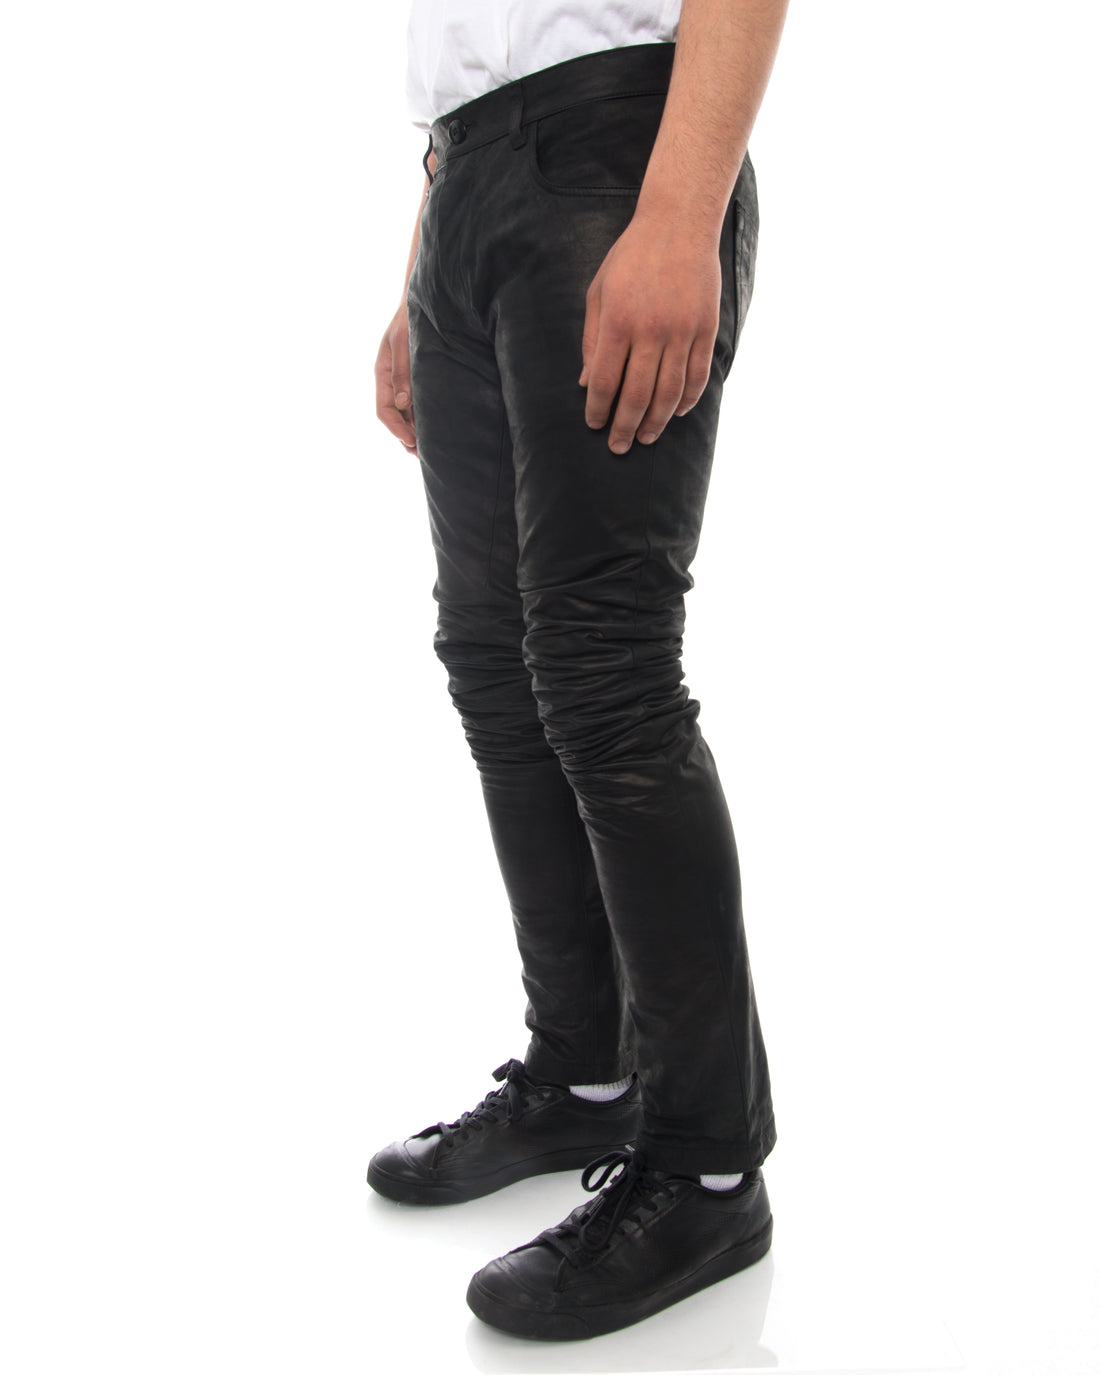 Rick Owens Black Matte Leather Pants - 30